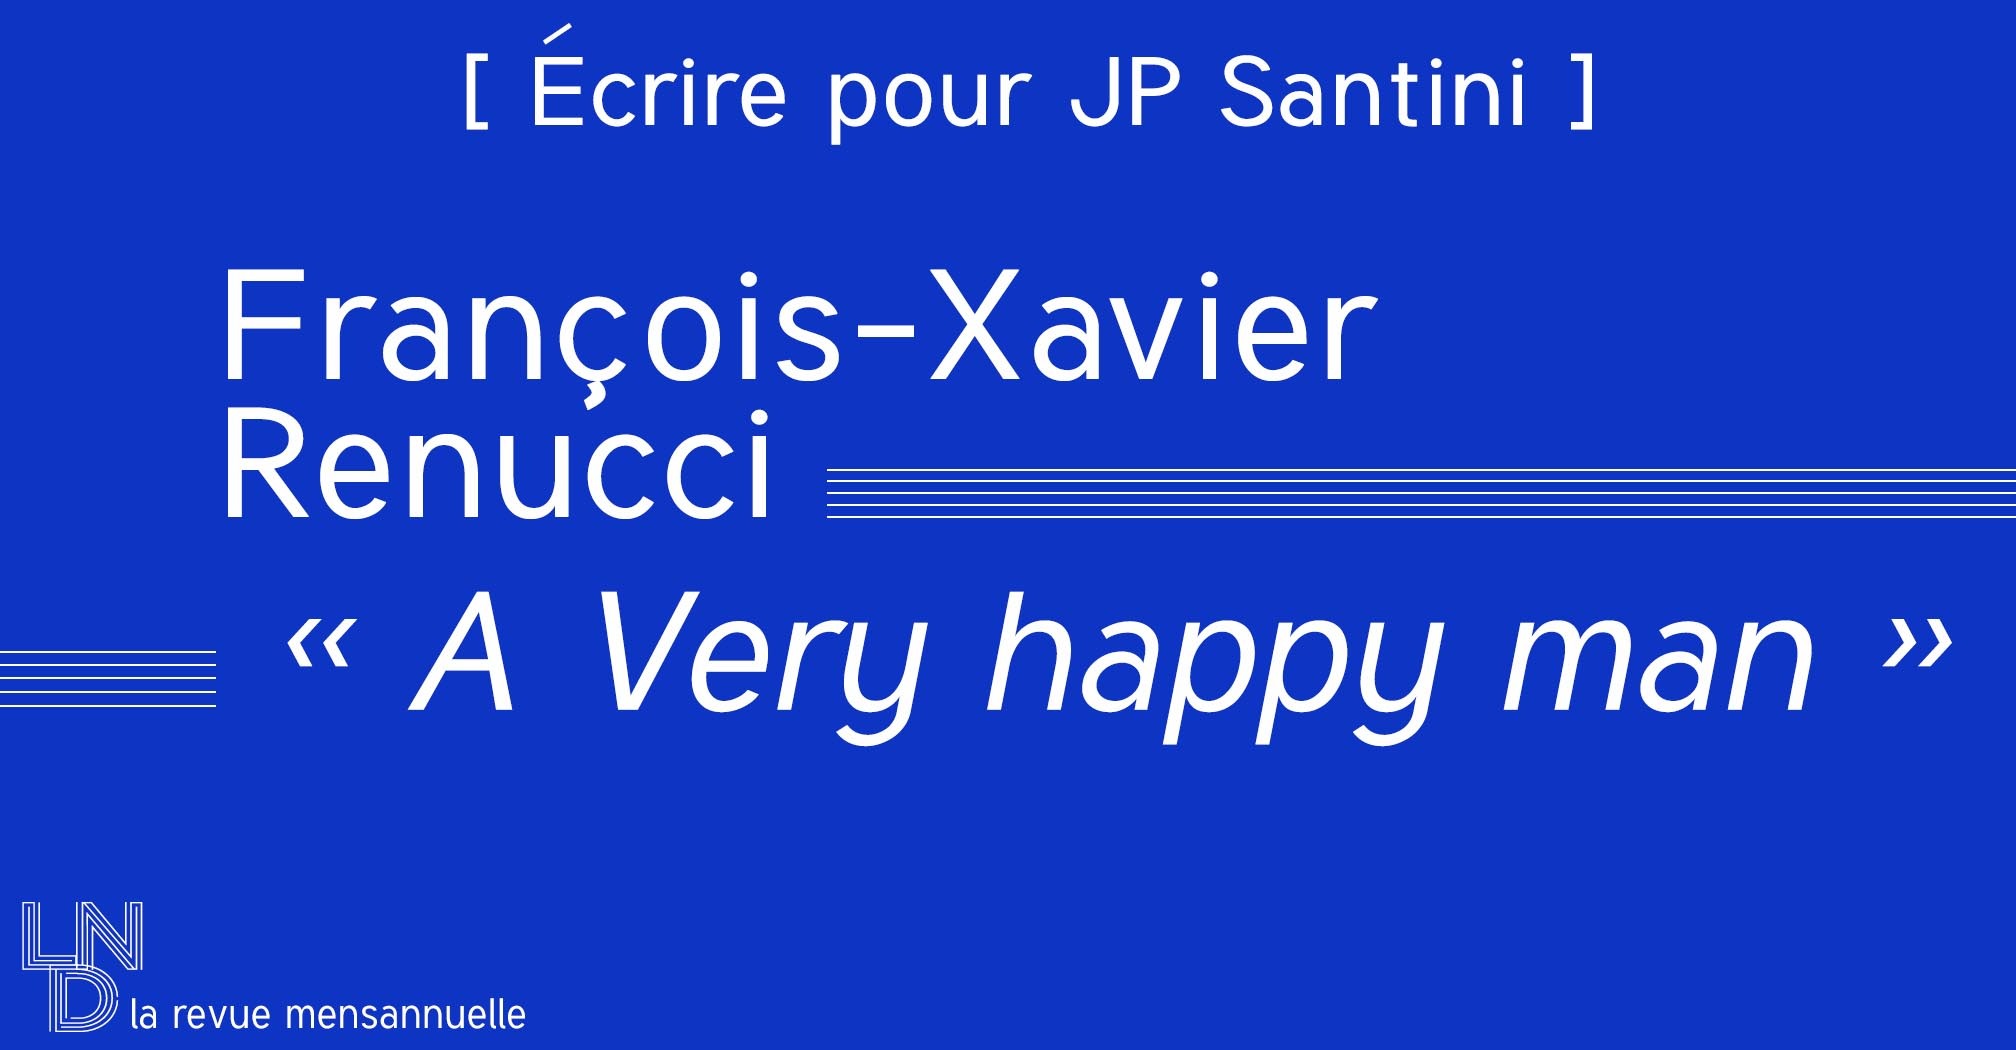 [ Écrire pour JP Santini ] François-Xavier Renucci - « A Very happy man » 